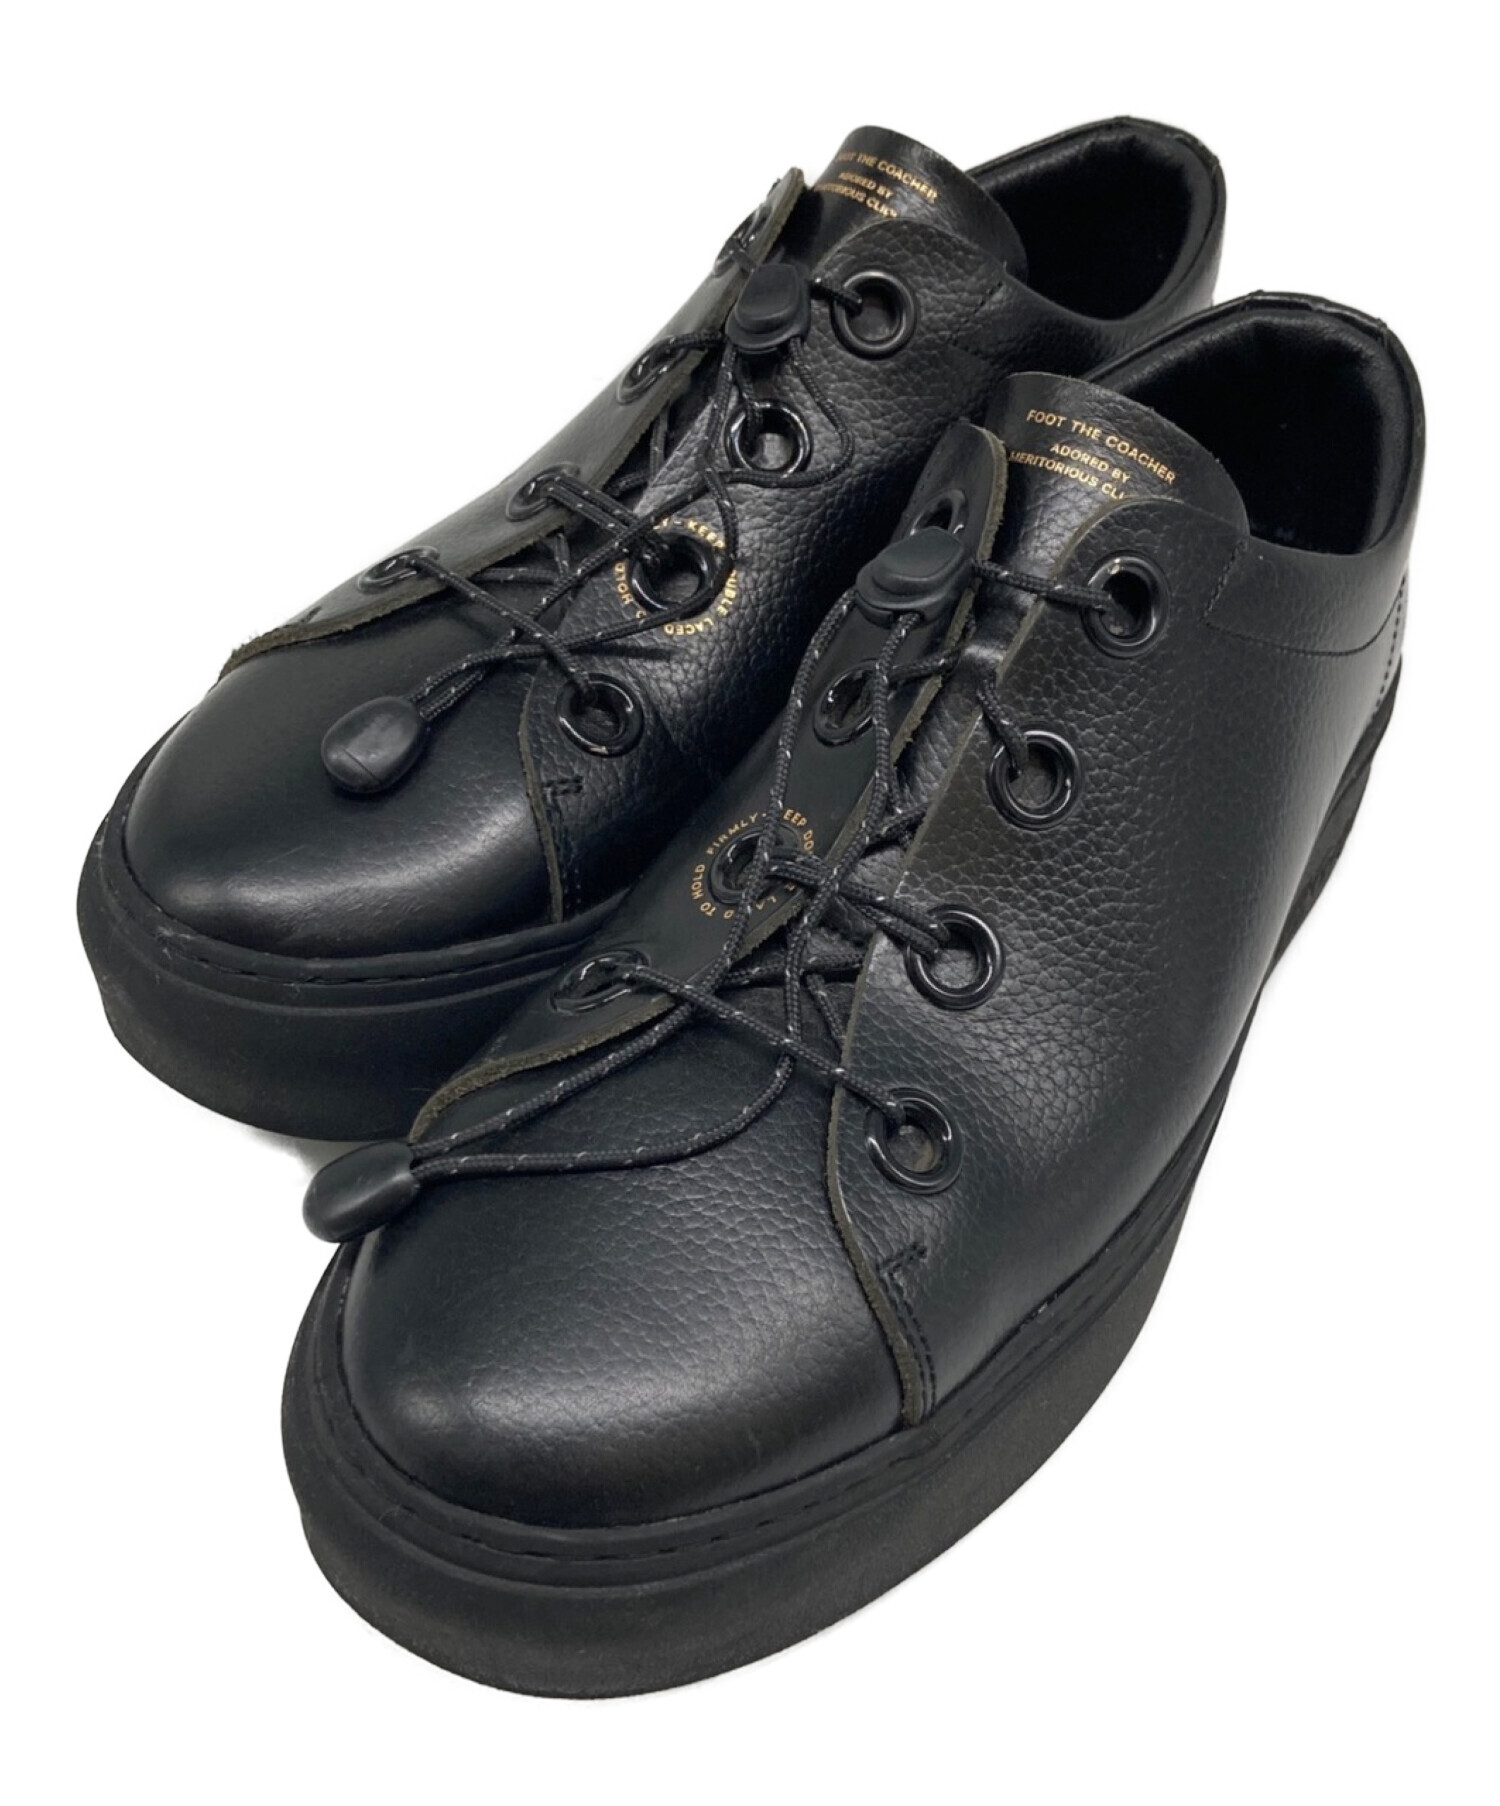 foot the coacher (フットザコーチャー) DOUBLE LACED スニーカー ブラック サイズ:8